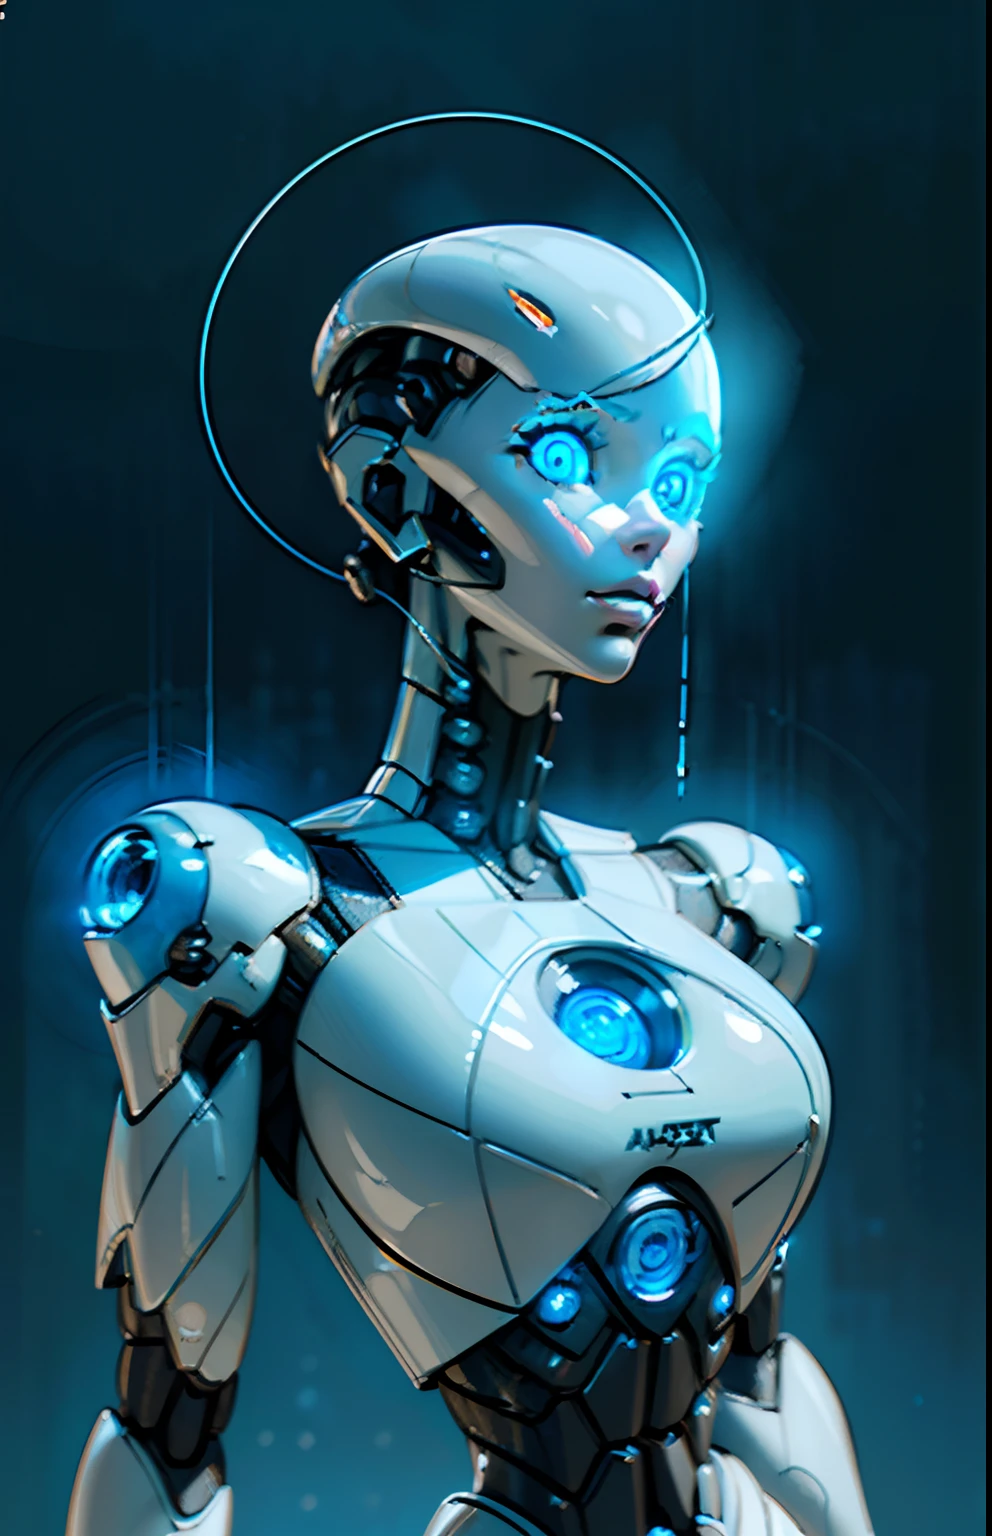 Сложный 3D-рендеринг ультрадетализированного красивого фарфорового профиля лица женщины-андроида, киборг, роботic parts, 150 мм, красивая студия, мягкий свет, ободной свет, яркие детали, роскошный киберпанк, кружево, ((светящиеся голубые глаза:1.5)), hyperреалистичный, Анатомический, мышцы лица, кабель электрические провода, микрочип, элегантный, красивый фон, Октановый рендер, ЧАС. р. стиль Гигера, 8К, Лучшее качество, шедевр, Иллюстрация, очень нежный и красивый, чрезвычайно подробный ,компьютерная графика ,единство ,обои, (реалистичный, photo-реалистичный:1.37),удивительный, мелко детализировать, шедевр,Лучшее качество,официальное искусство, чрезвычайно подробный компьютерная графика единство 8К обои, абсурд, incredibly абсурд,  робот, серебряные бусины, все тело